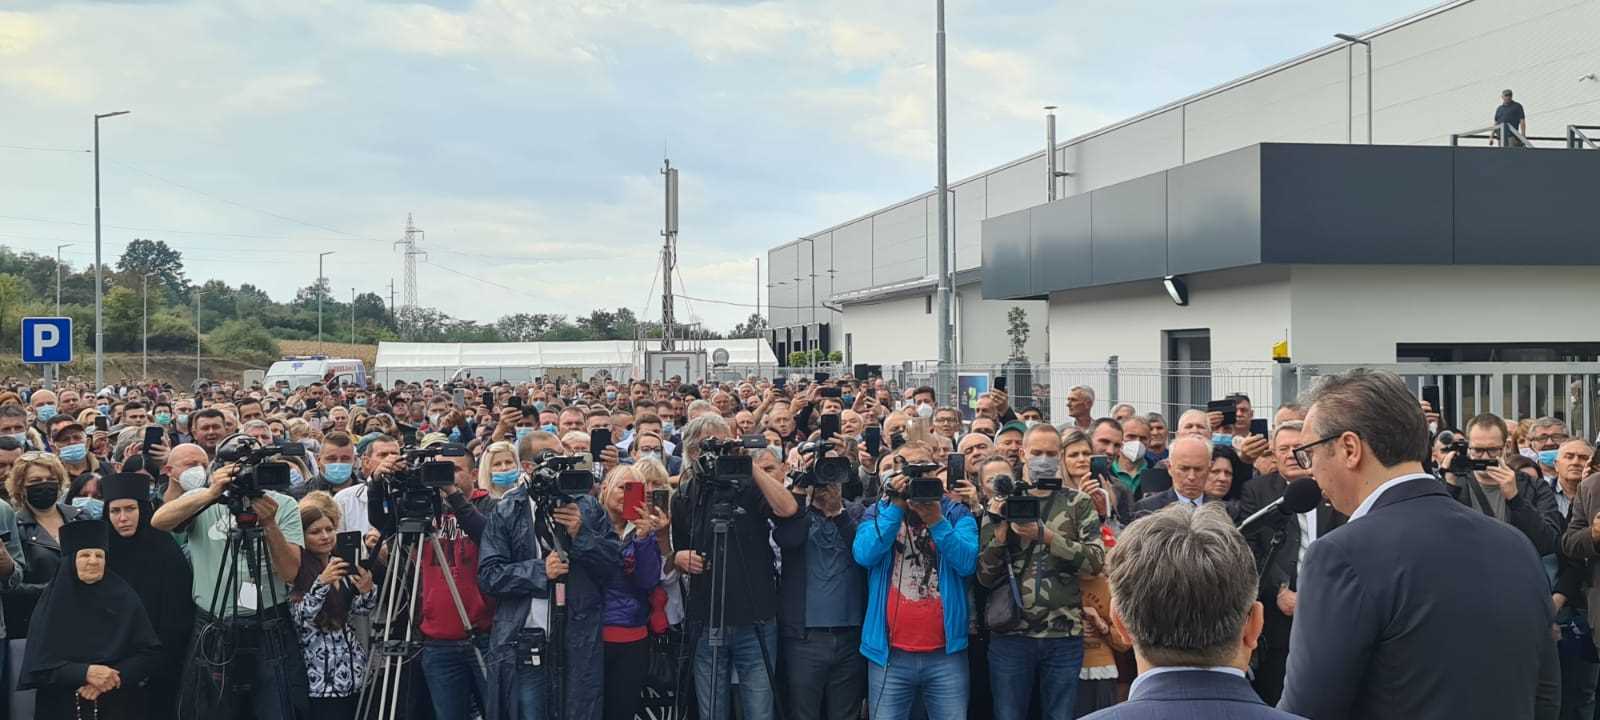 Novi pogon svajcarske kompanije "Regent lajtning" u Svilajncu, koja ce zaposliti vise od 120 radnika, presecanjem vrpce zvanicno je otvorio predsednik Srbije Aleksandar Vucic.